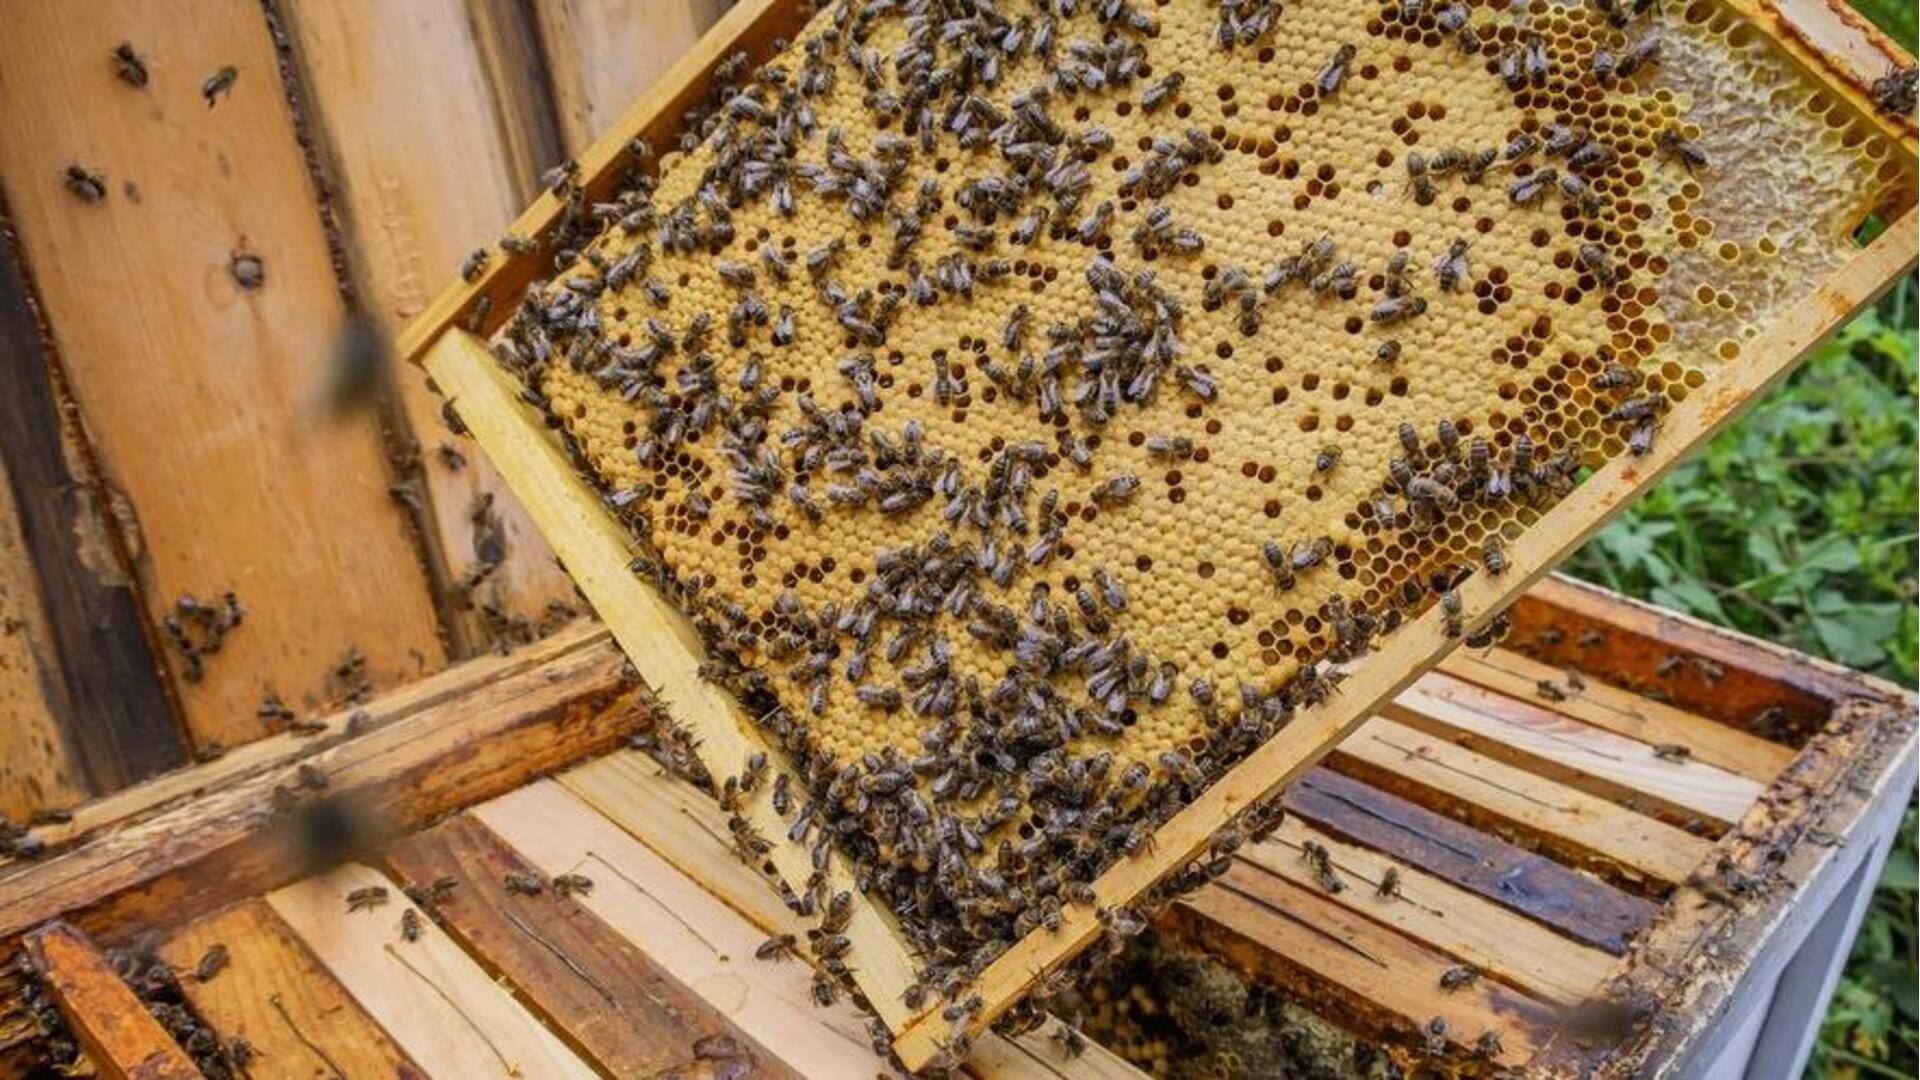 Pakar mengungkap bagaimana beternak lebah berdampak positif pada lingkungan kita